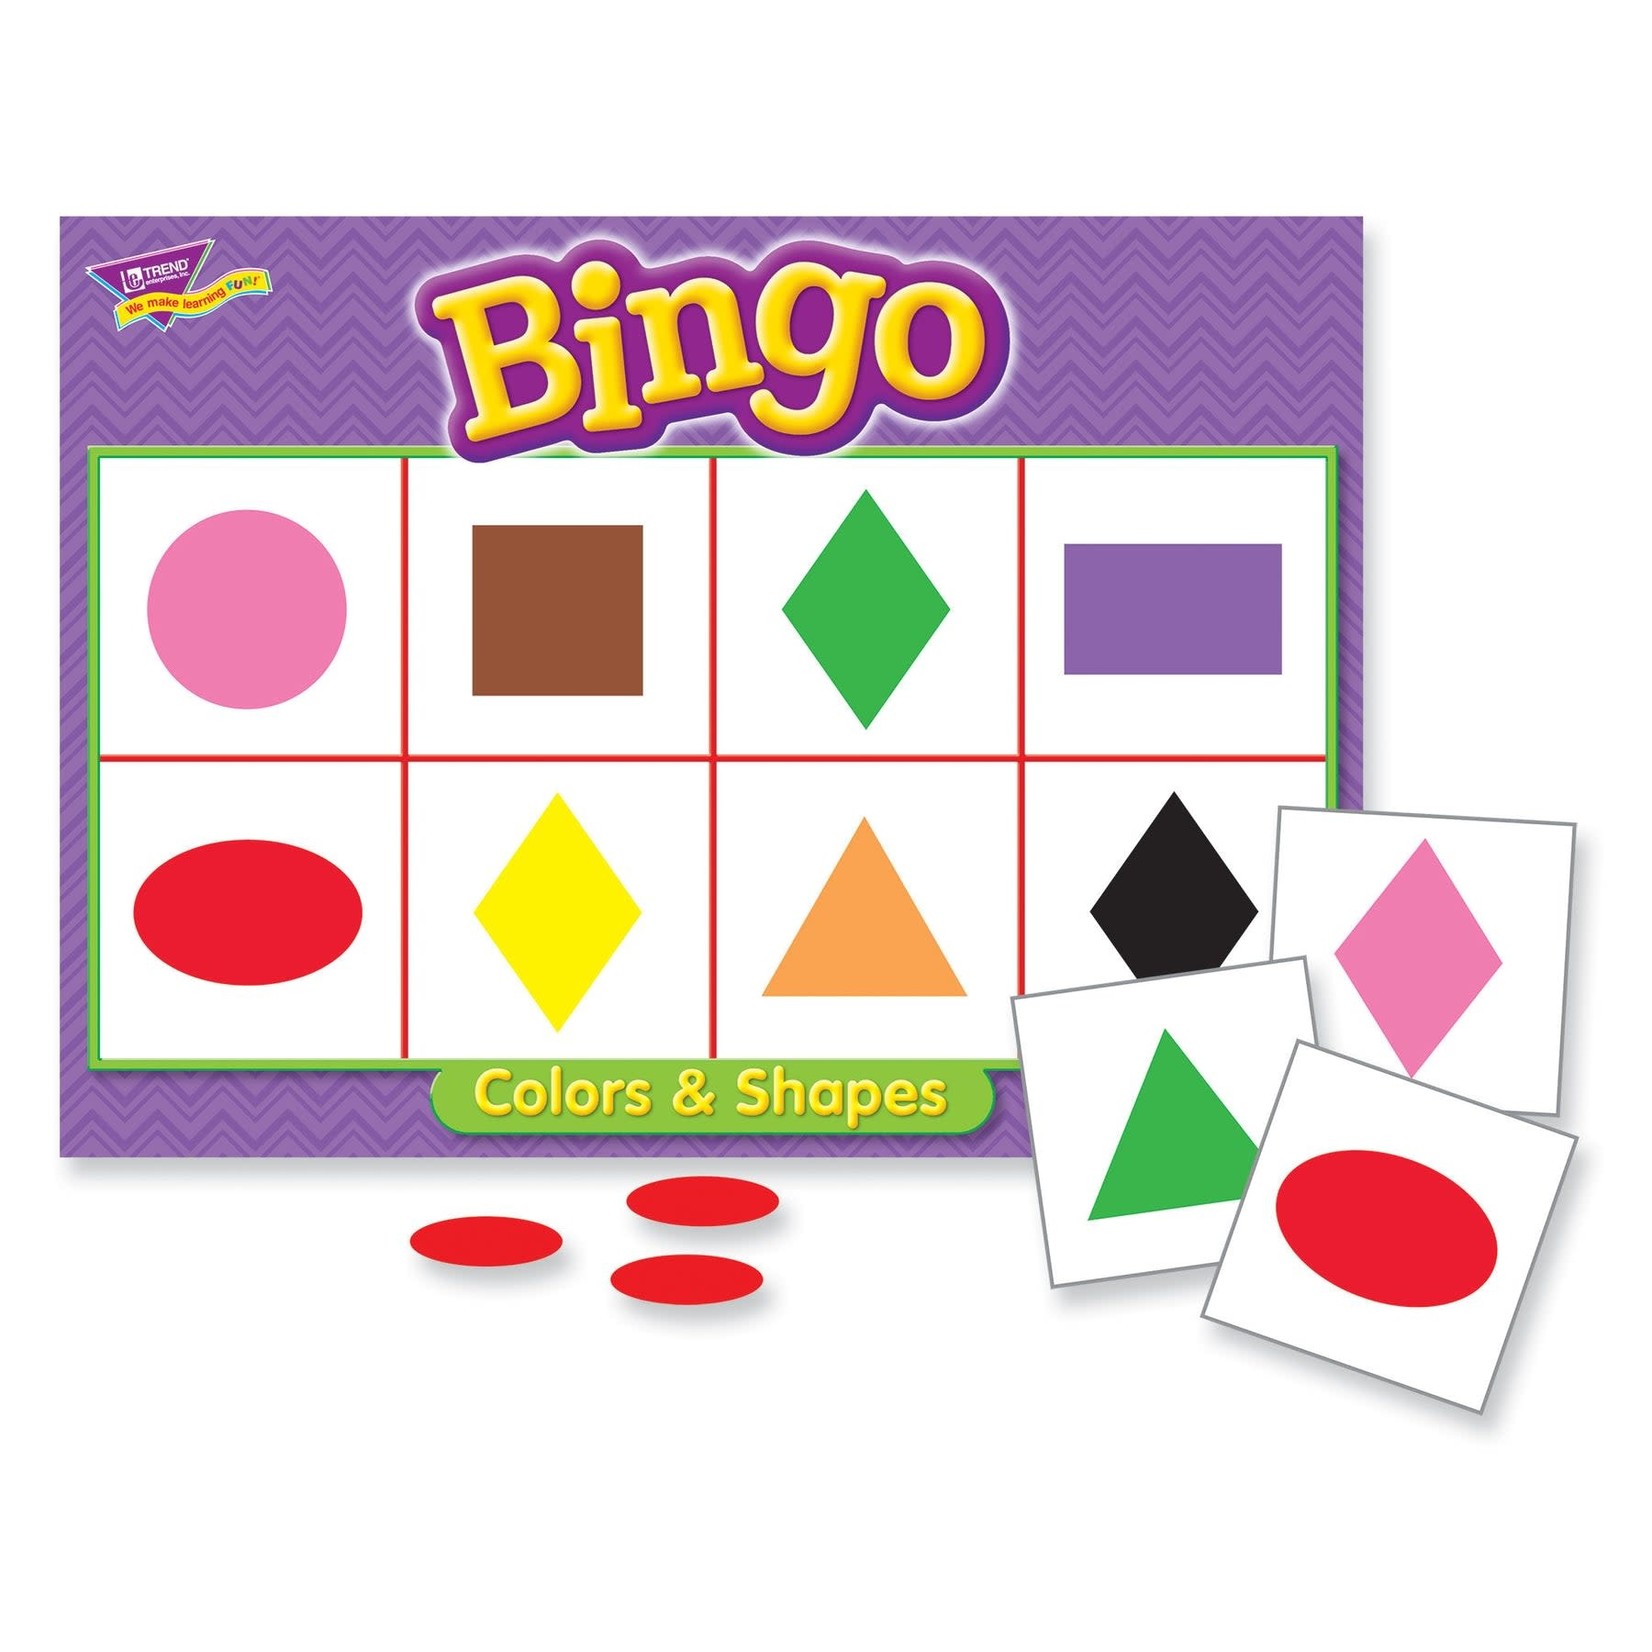 TREND ENTERPRISES INC Colors & Shapes Bingo Game